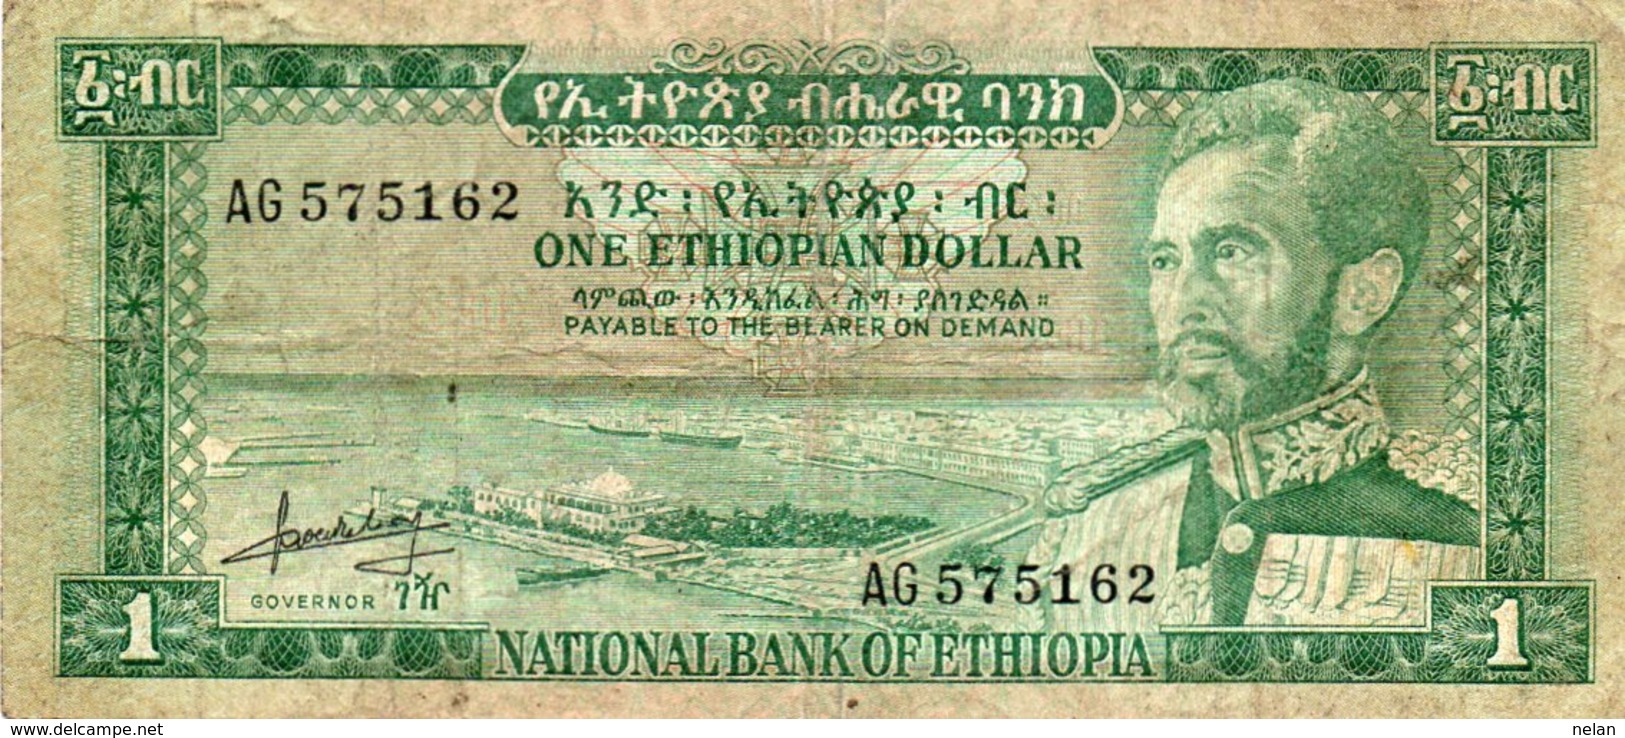 ETHIOPIA 1 DOLLAR 1966 P-25 - Ethiopia